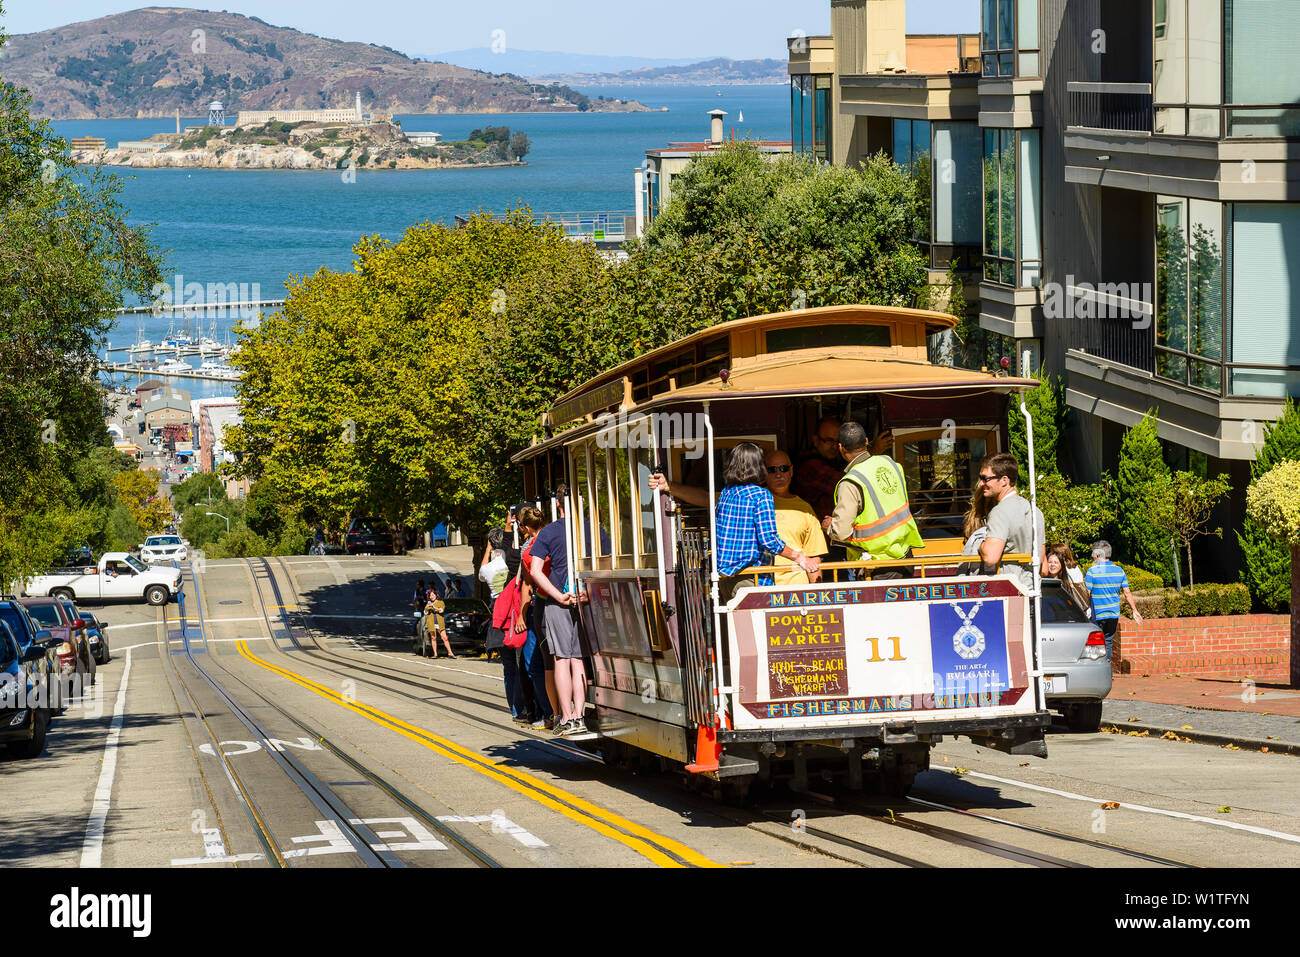 cablecar and Alcatraz, San Francisco, California, USA Stock Photo